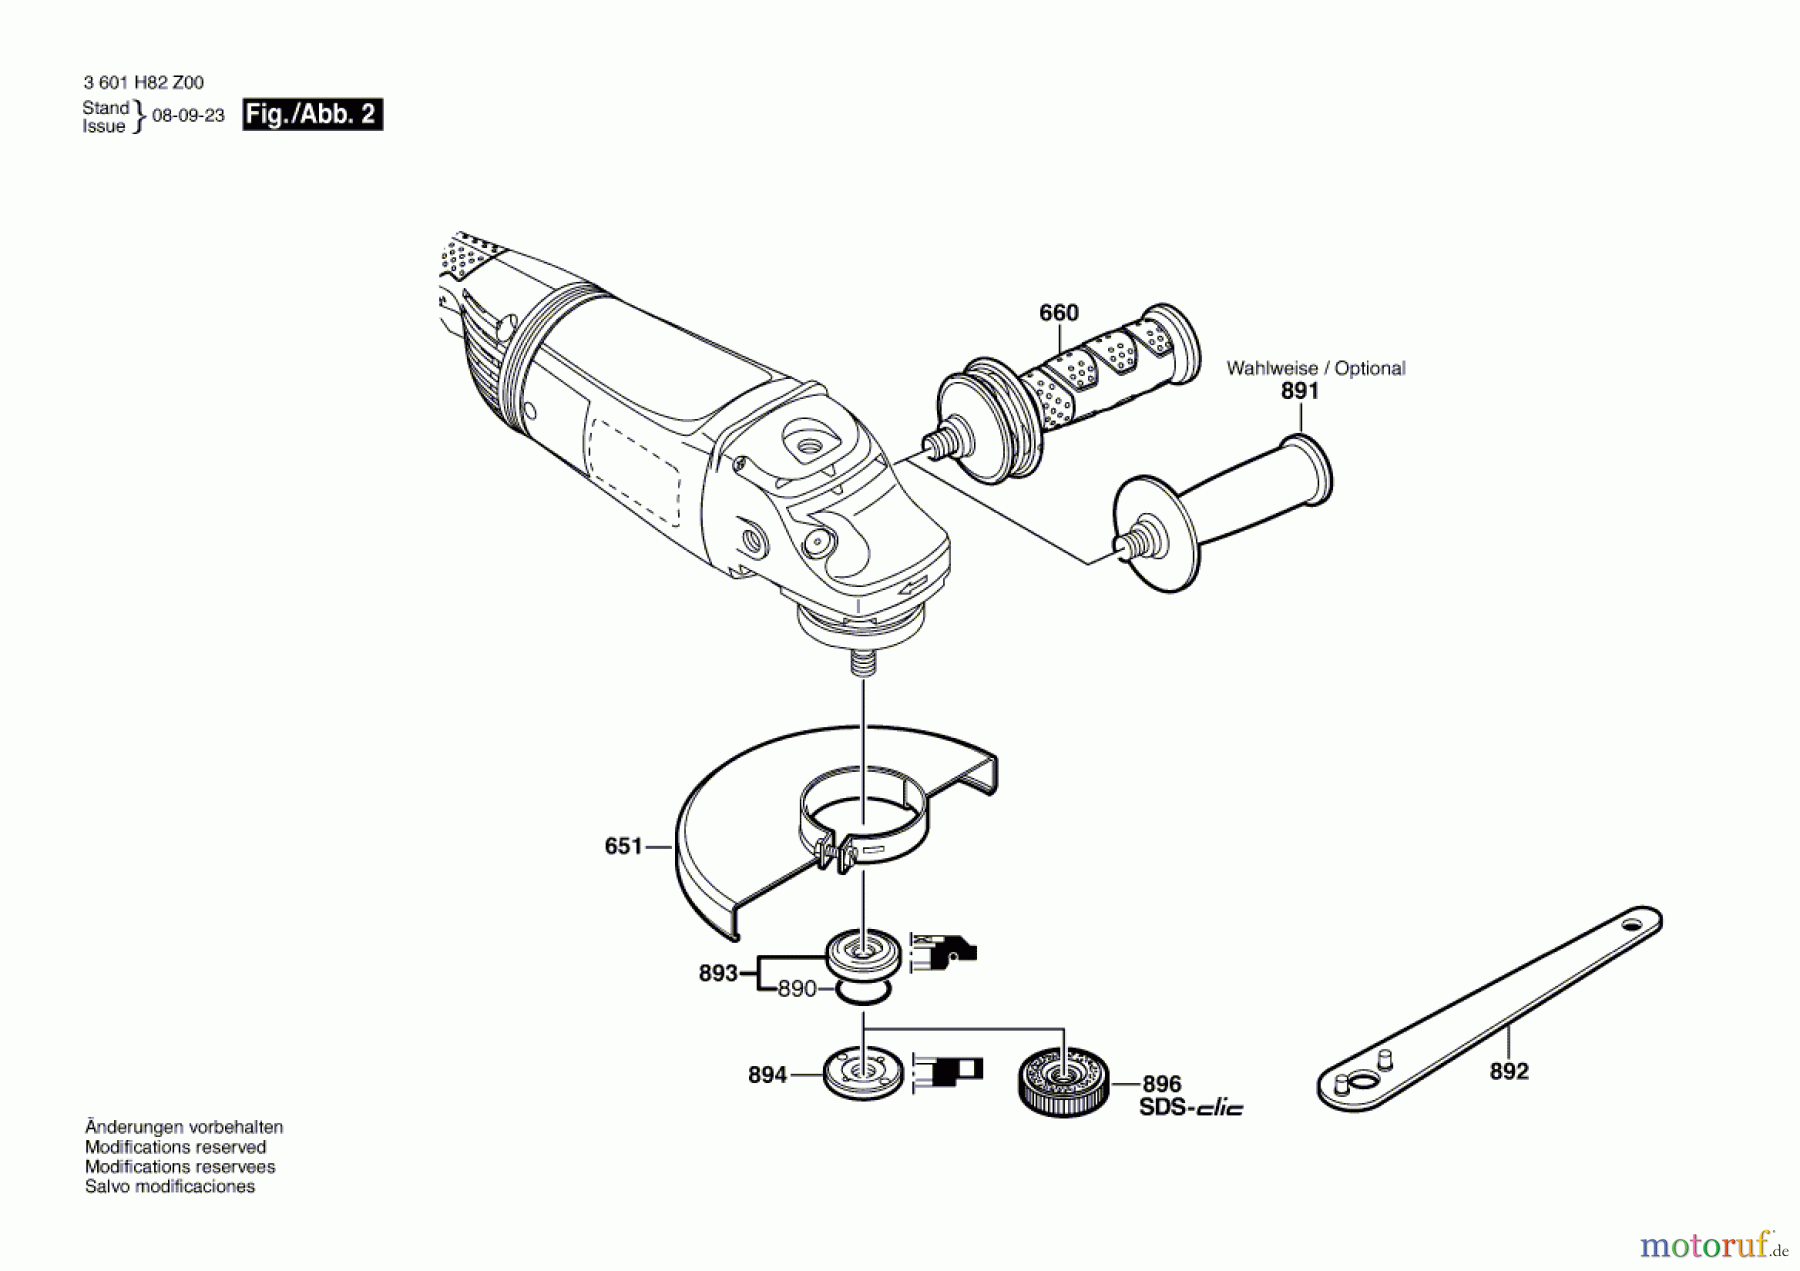  Bosch Werkzeug Winkelschleifer GWS 22-230 H Seite 2